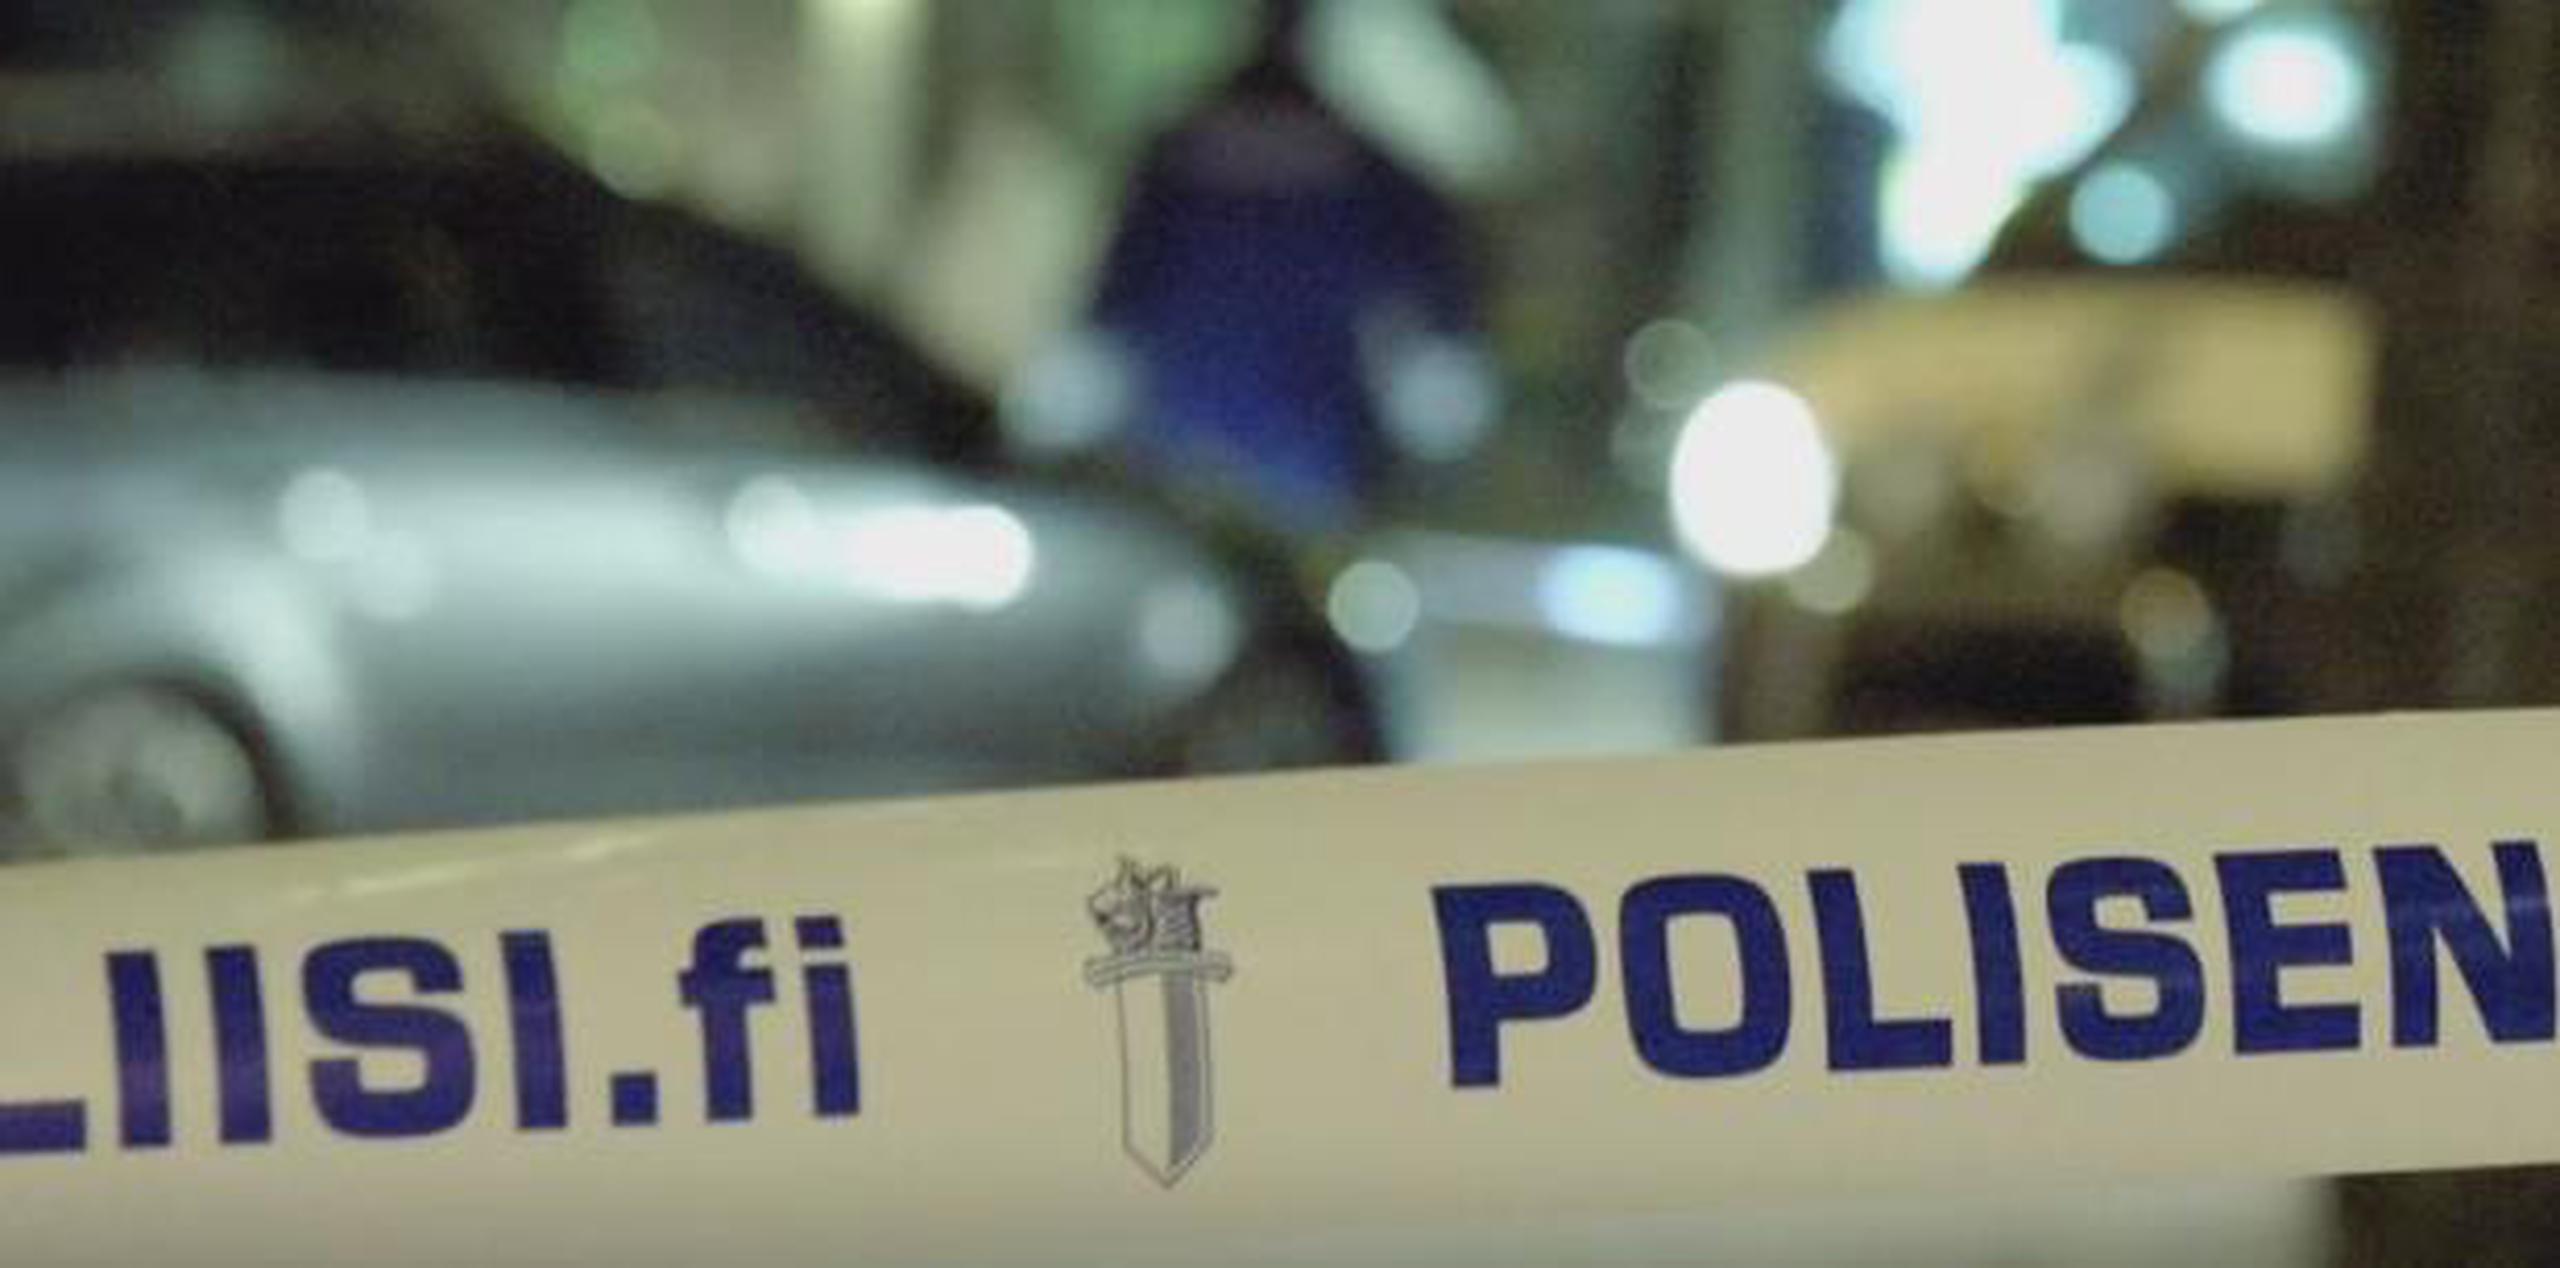 El primer ministro Antti Rinne tuiteó que la violencia era “escandalosa y totalmente condenable”. (Captura vídeo Independent)